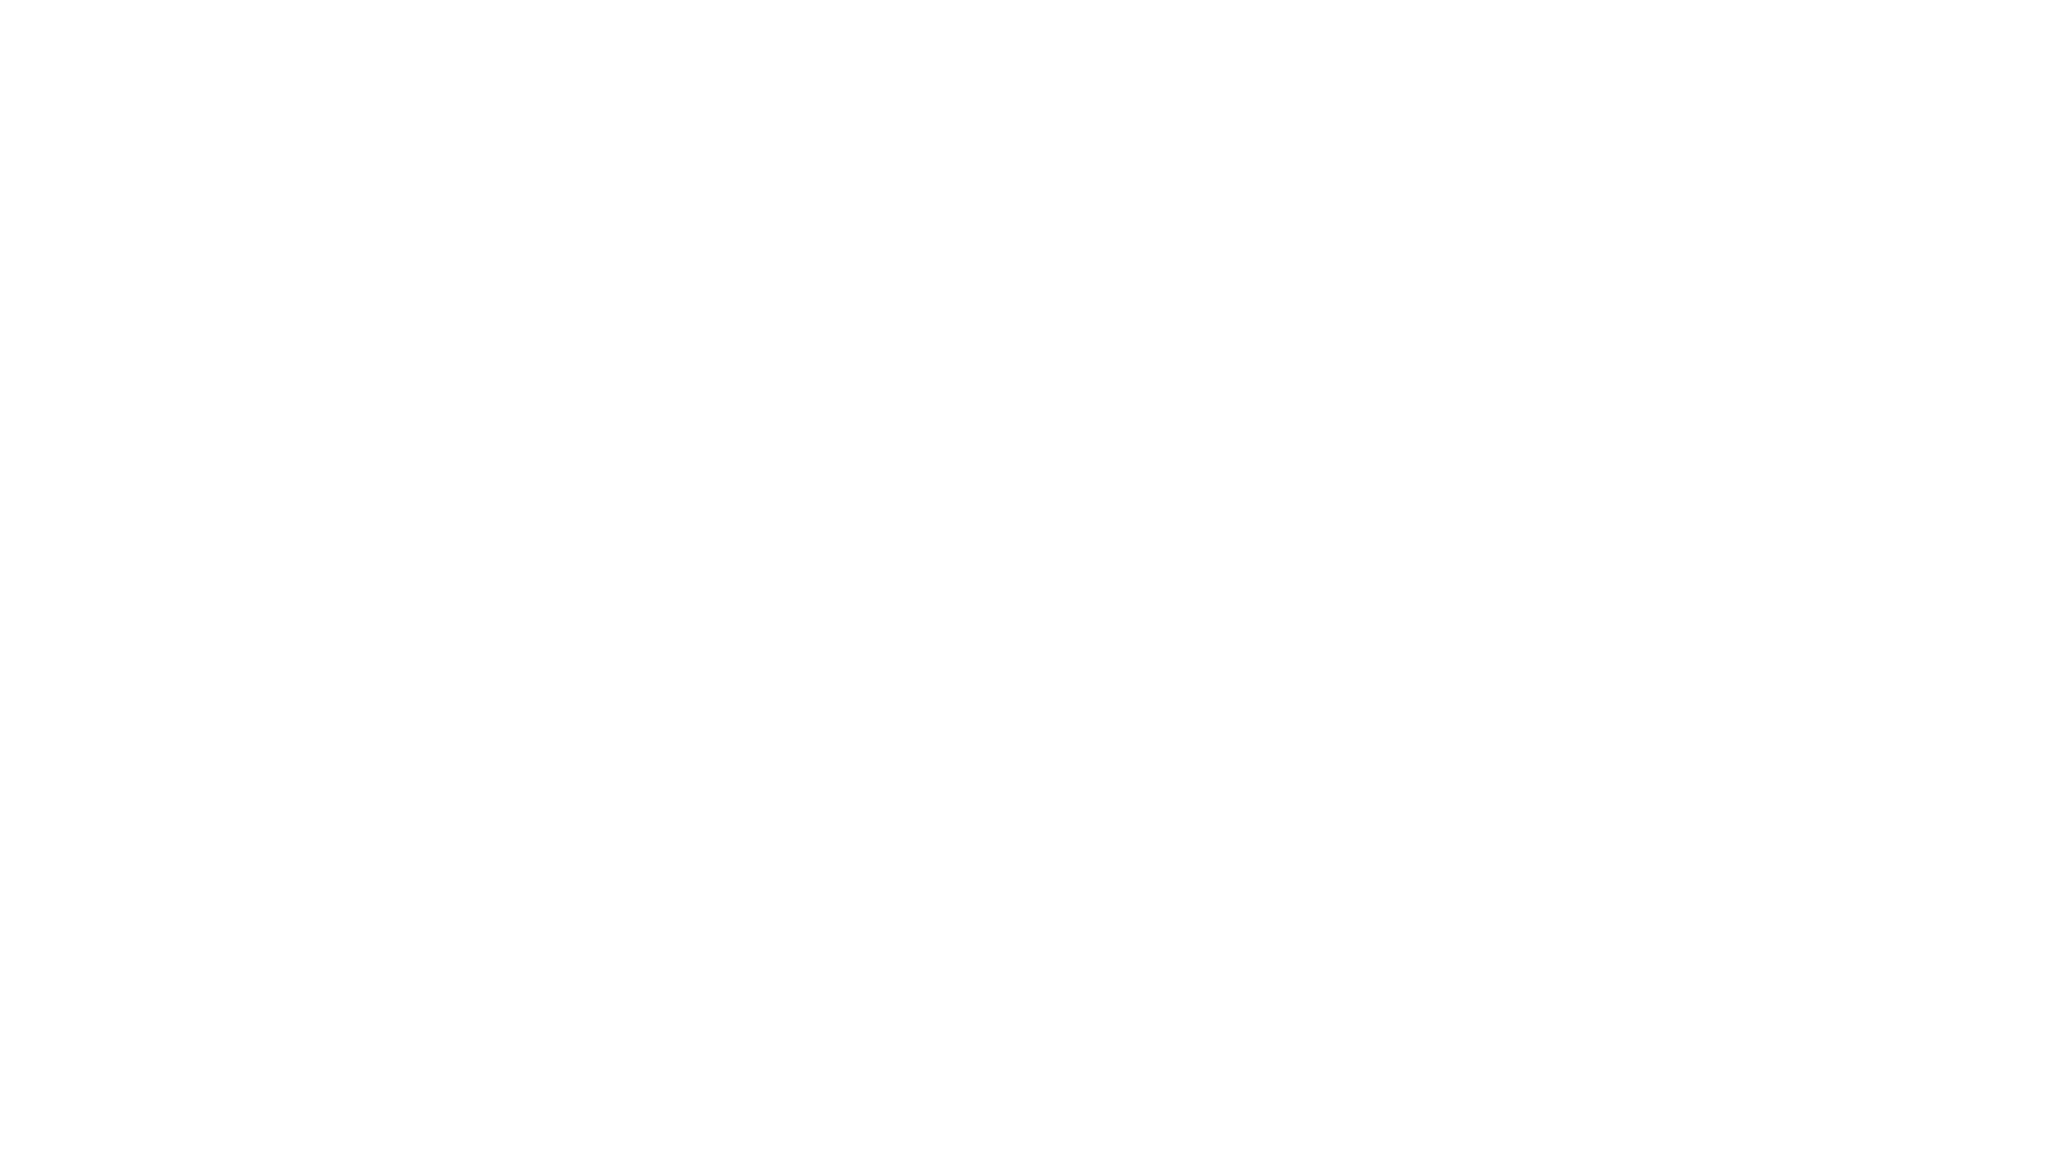 アメリカでの素晴らしい家族とのキャンプ体験